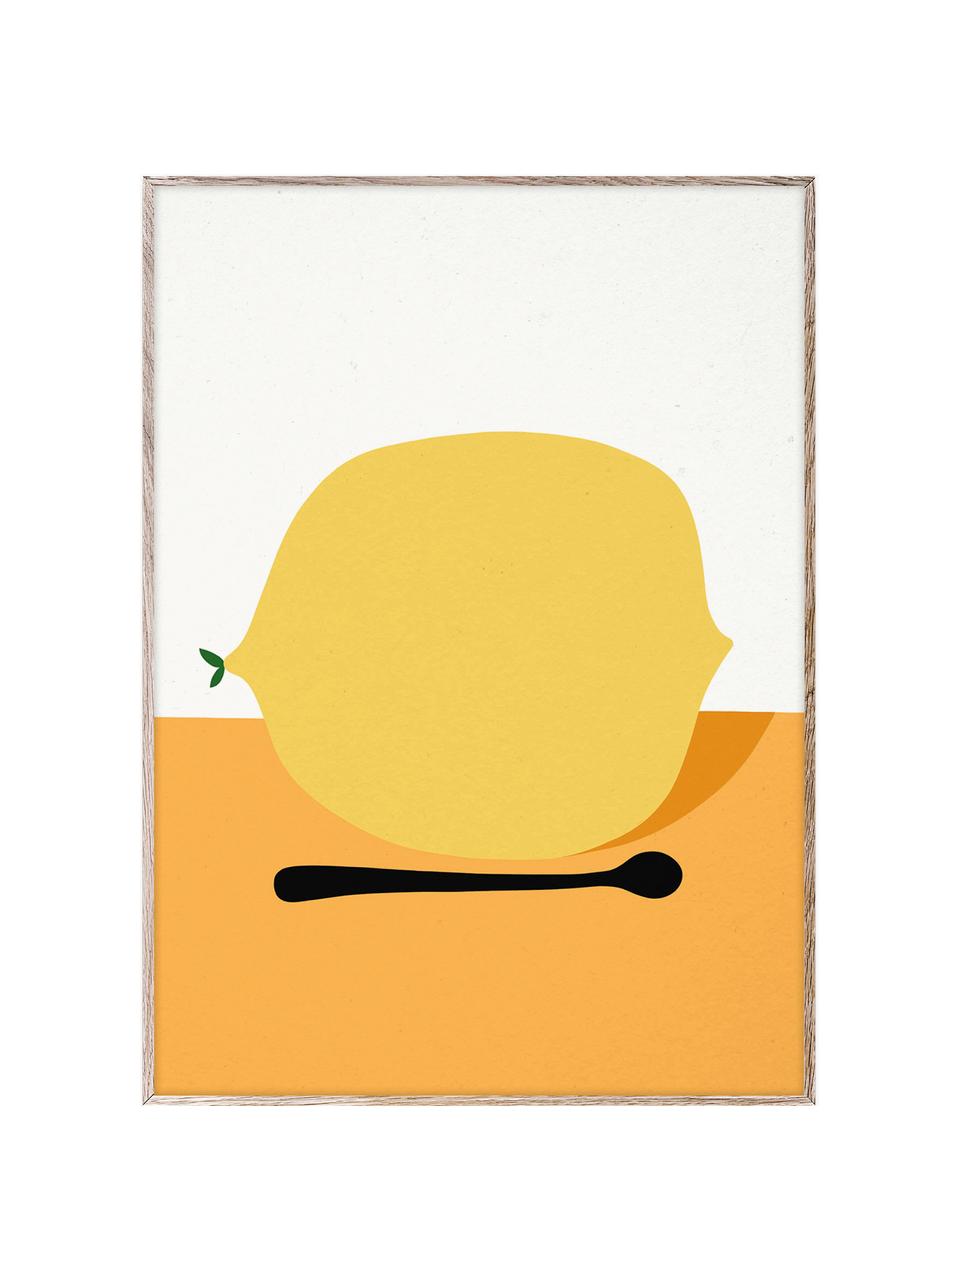 Plagát Citron, 210 g matný papier Hahnemühle, digitálna tlač s 10 farbami odolnými voči UV žiareniu, Žltá, oranžová, lomená biela, Š 30 x V 40 cm